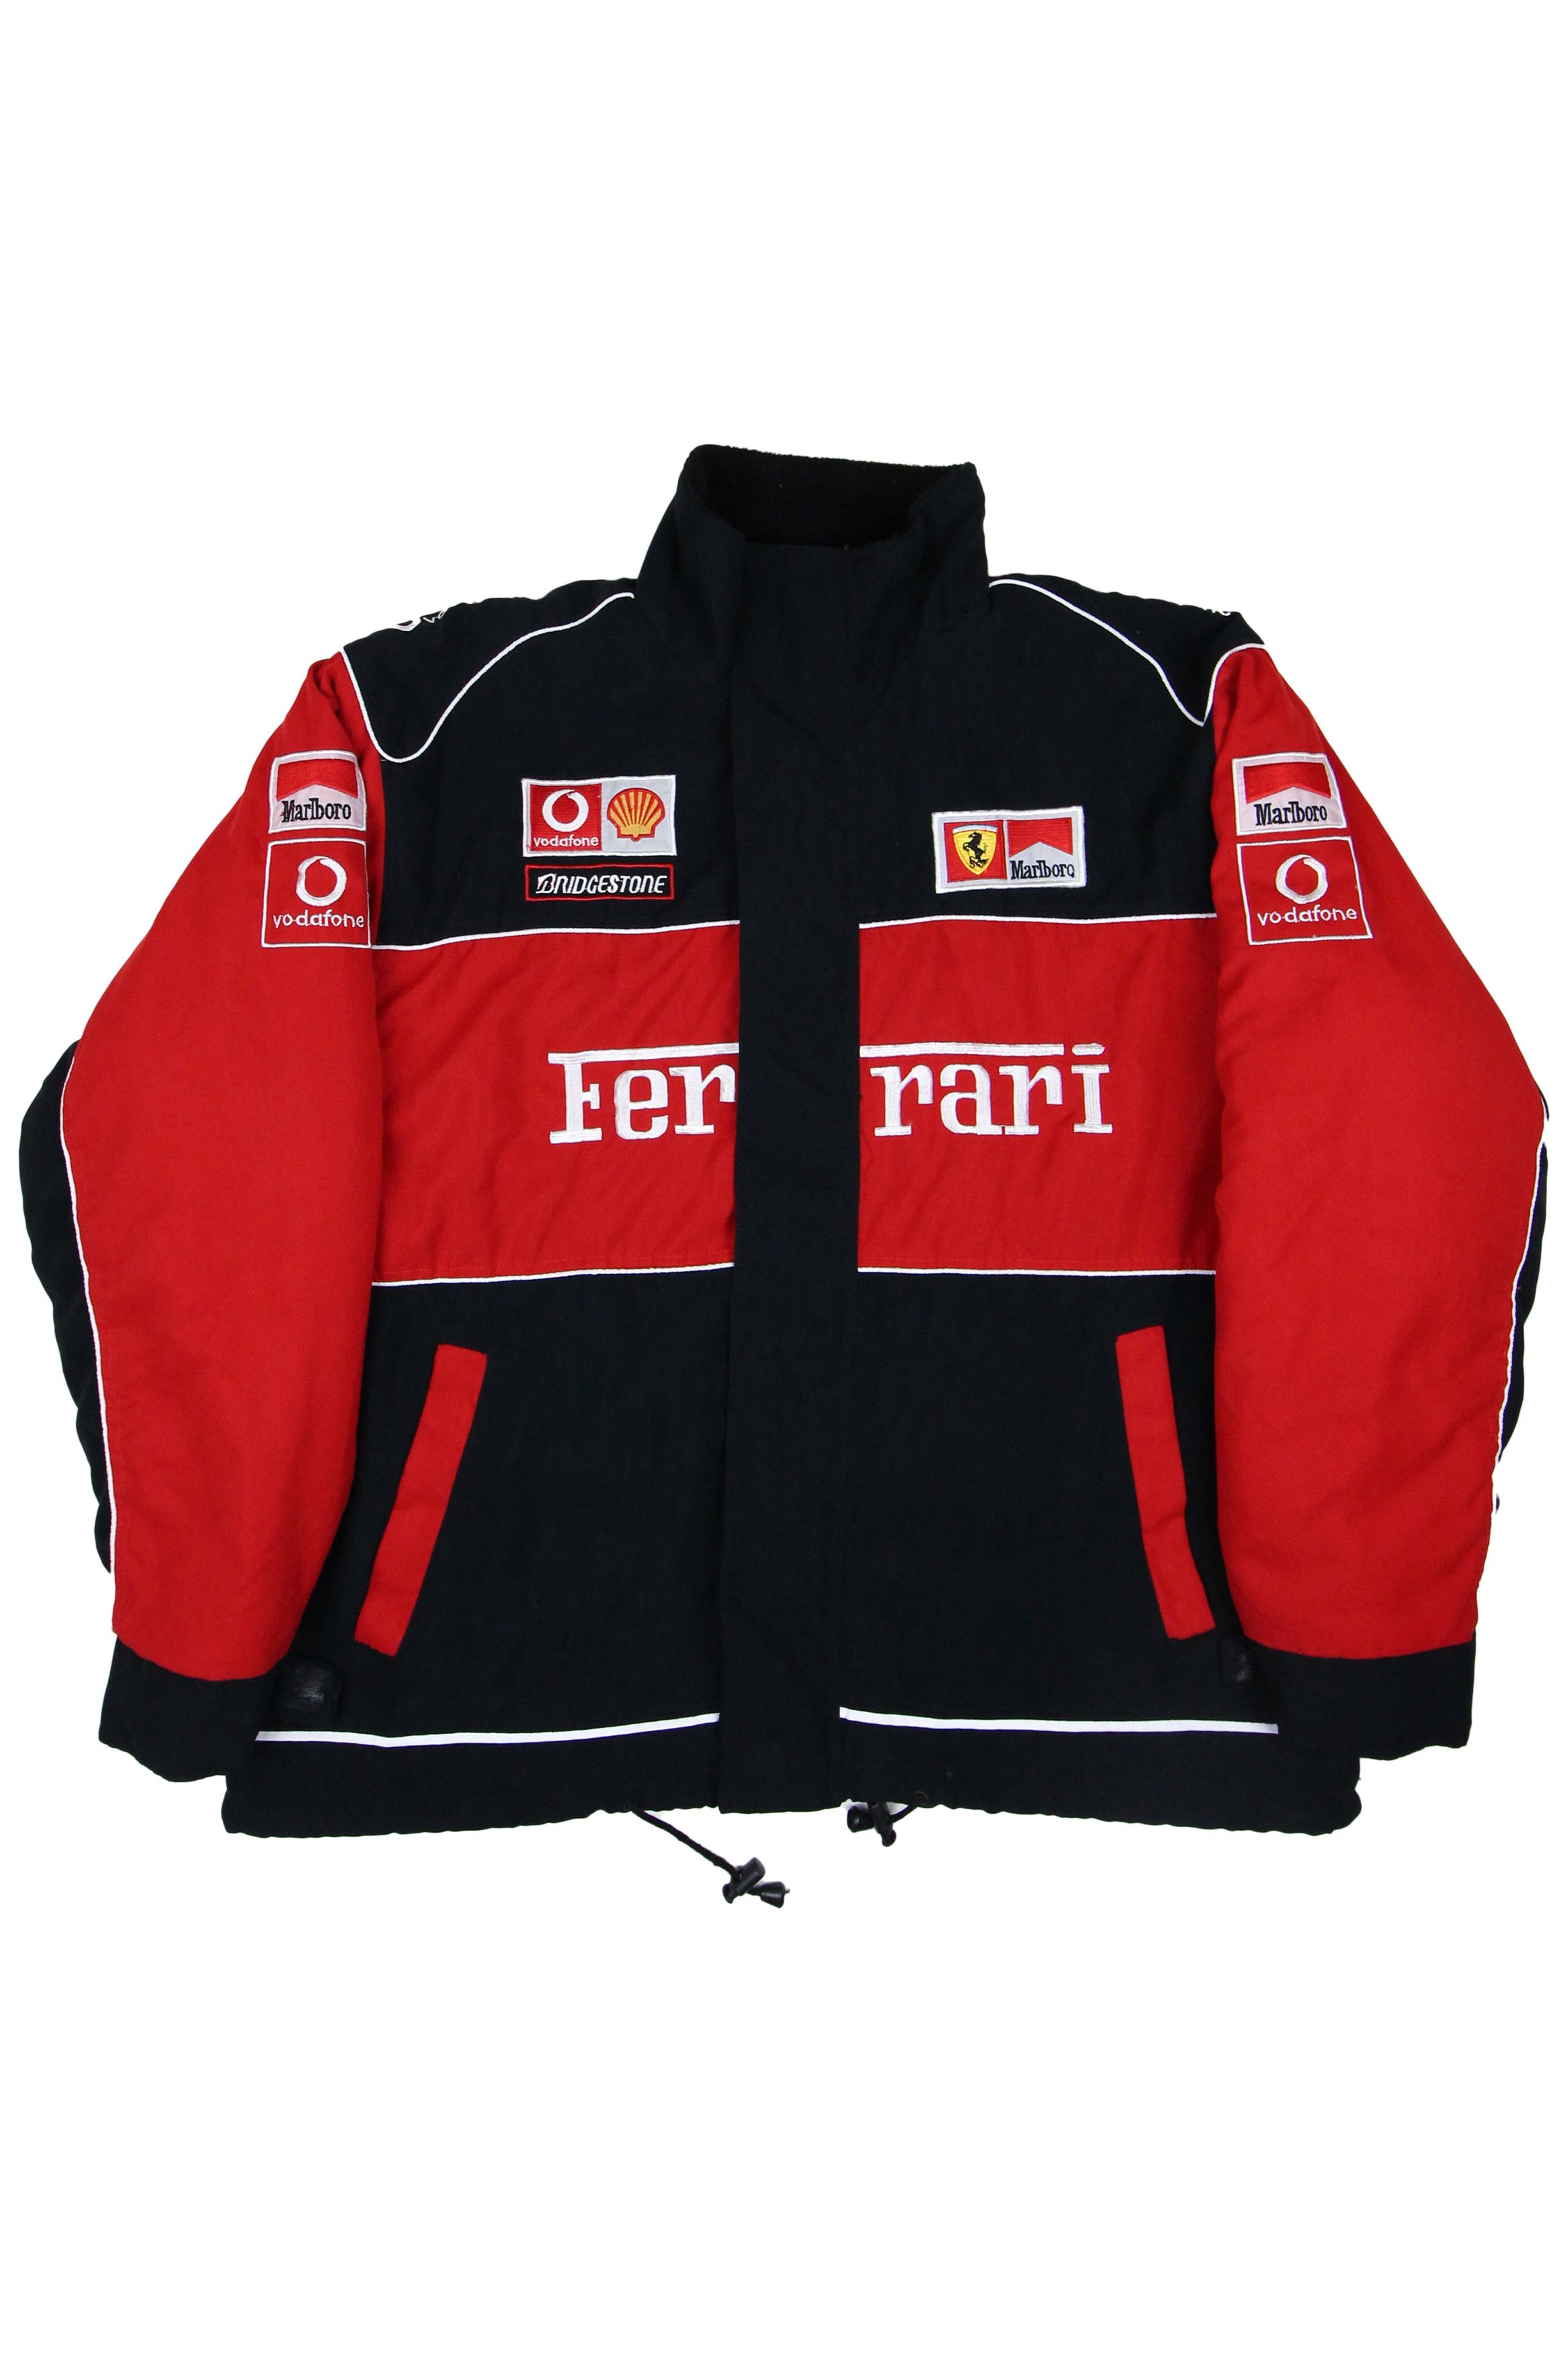 Marlboro Ferrari X Malboro F1 Jacket Michael Schumacher | Grailed